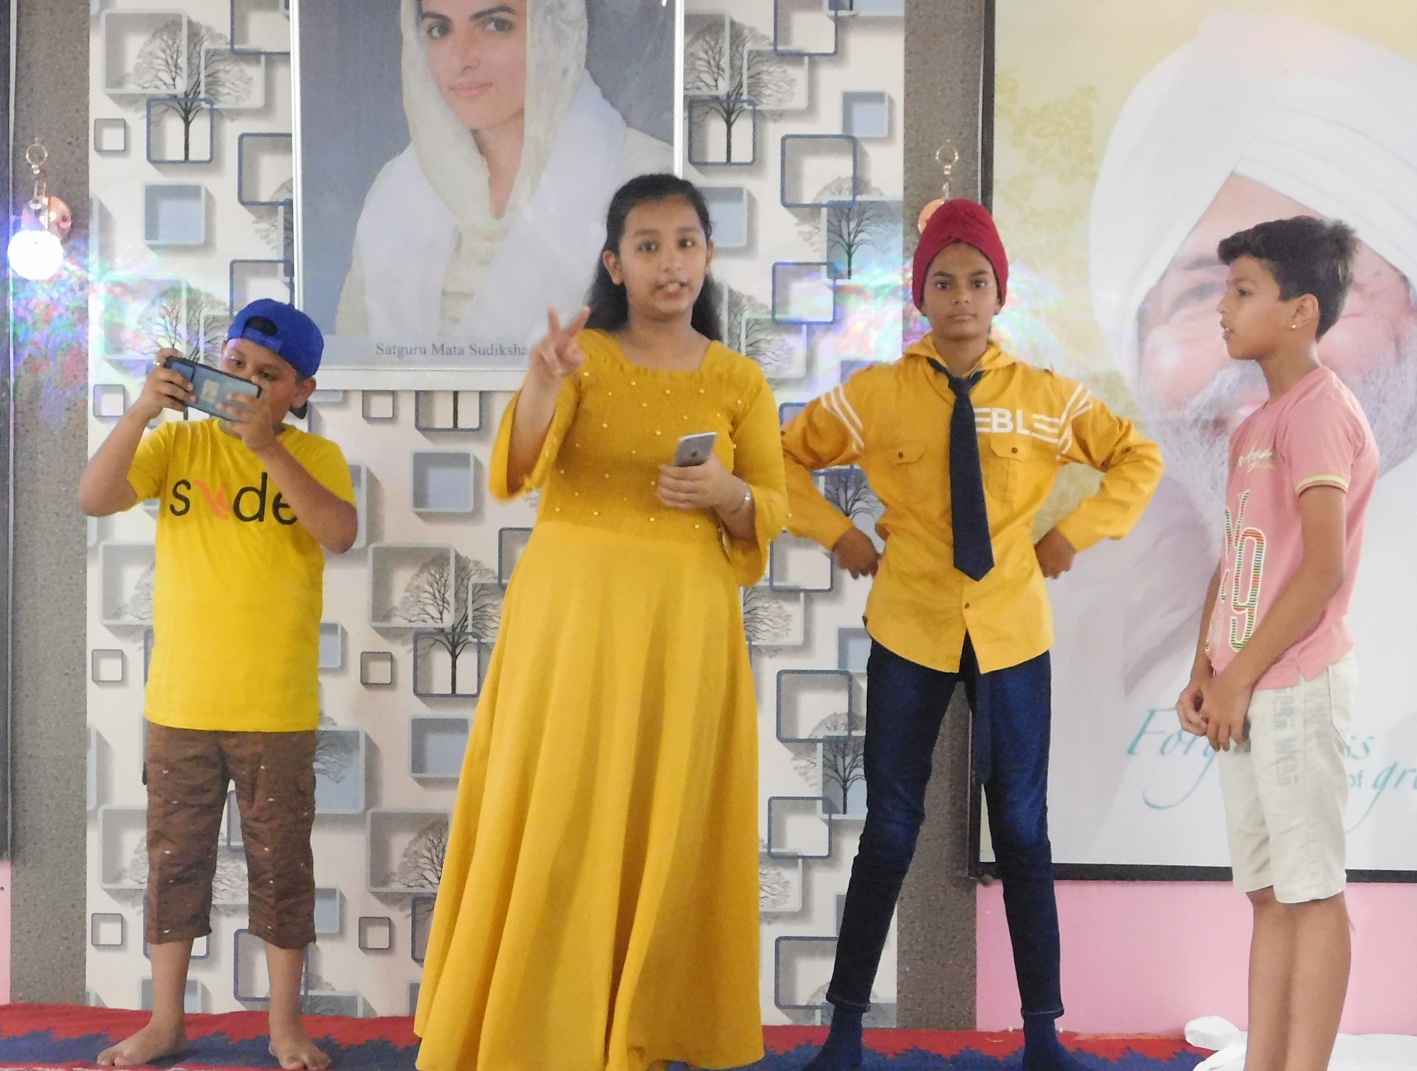 Video Story आध्यात्म से जोडऩे पहली बार यहां बाल सत्संग समागम, समाज के लिए बच्चों ने दिया संदेश